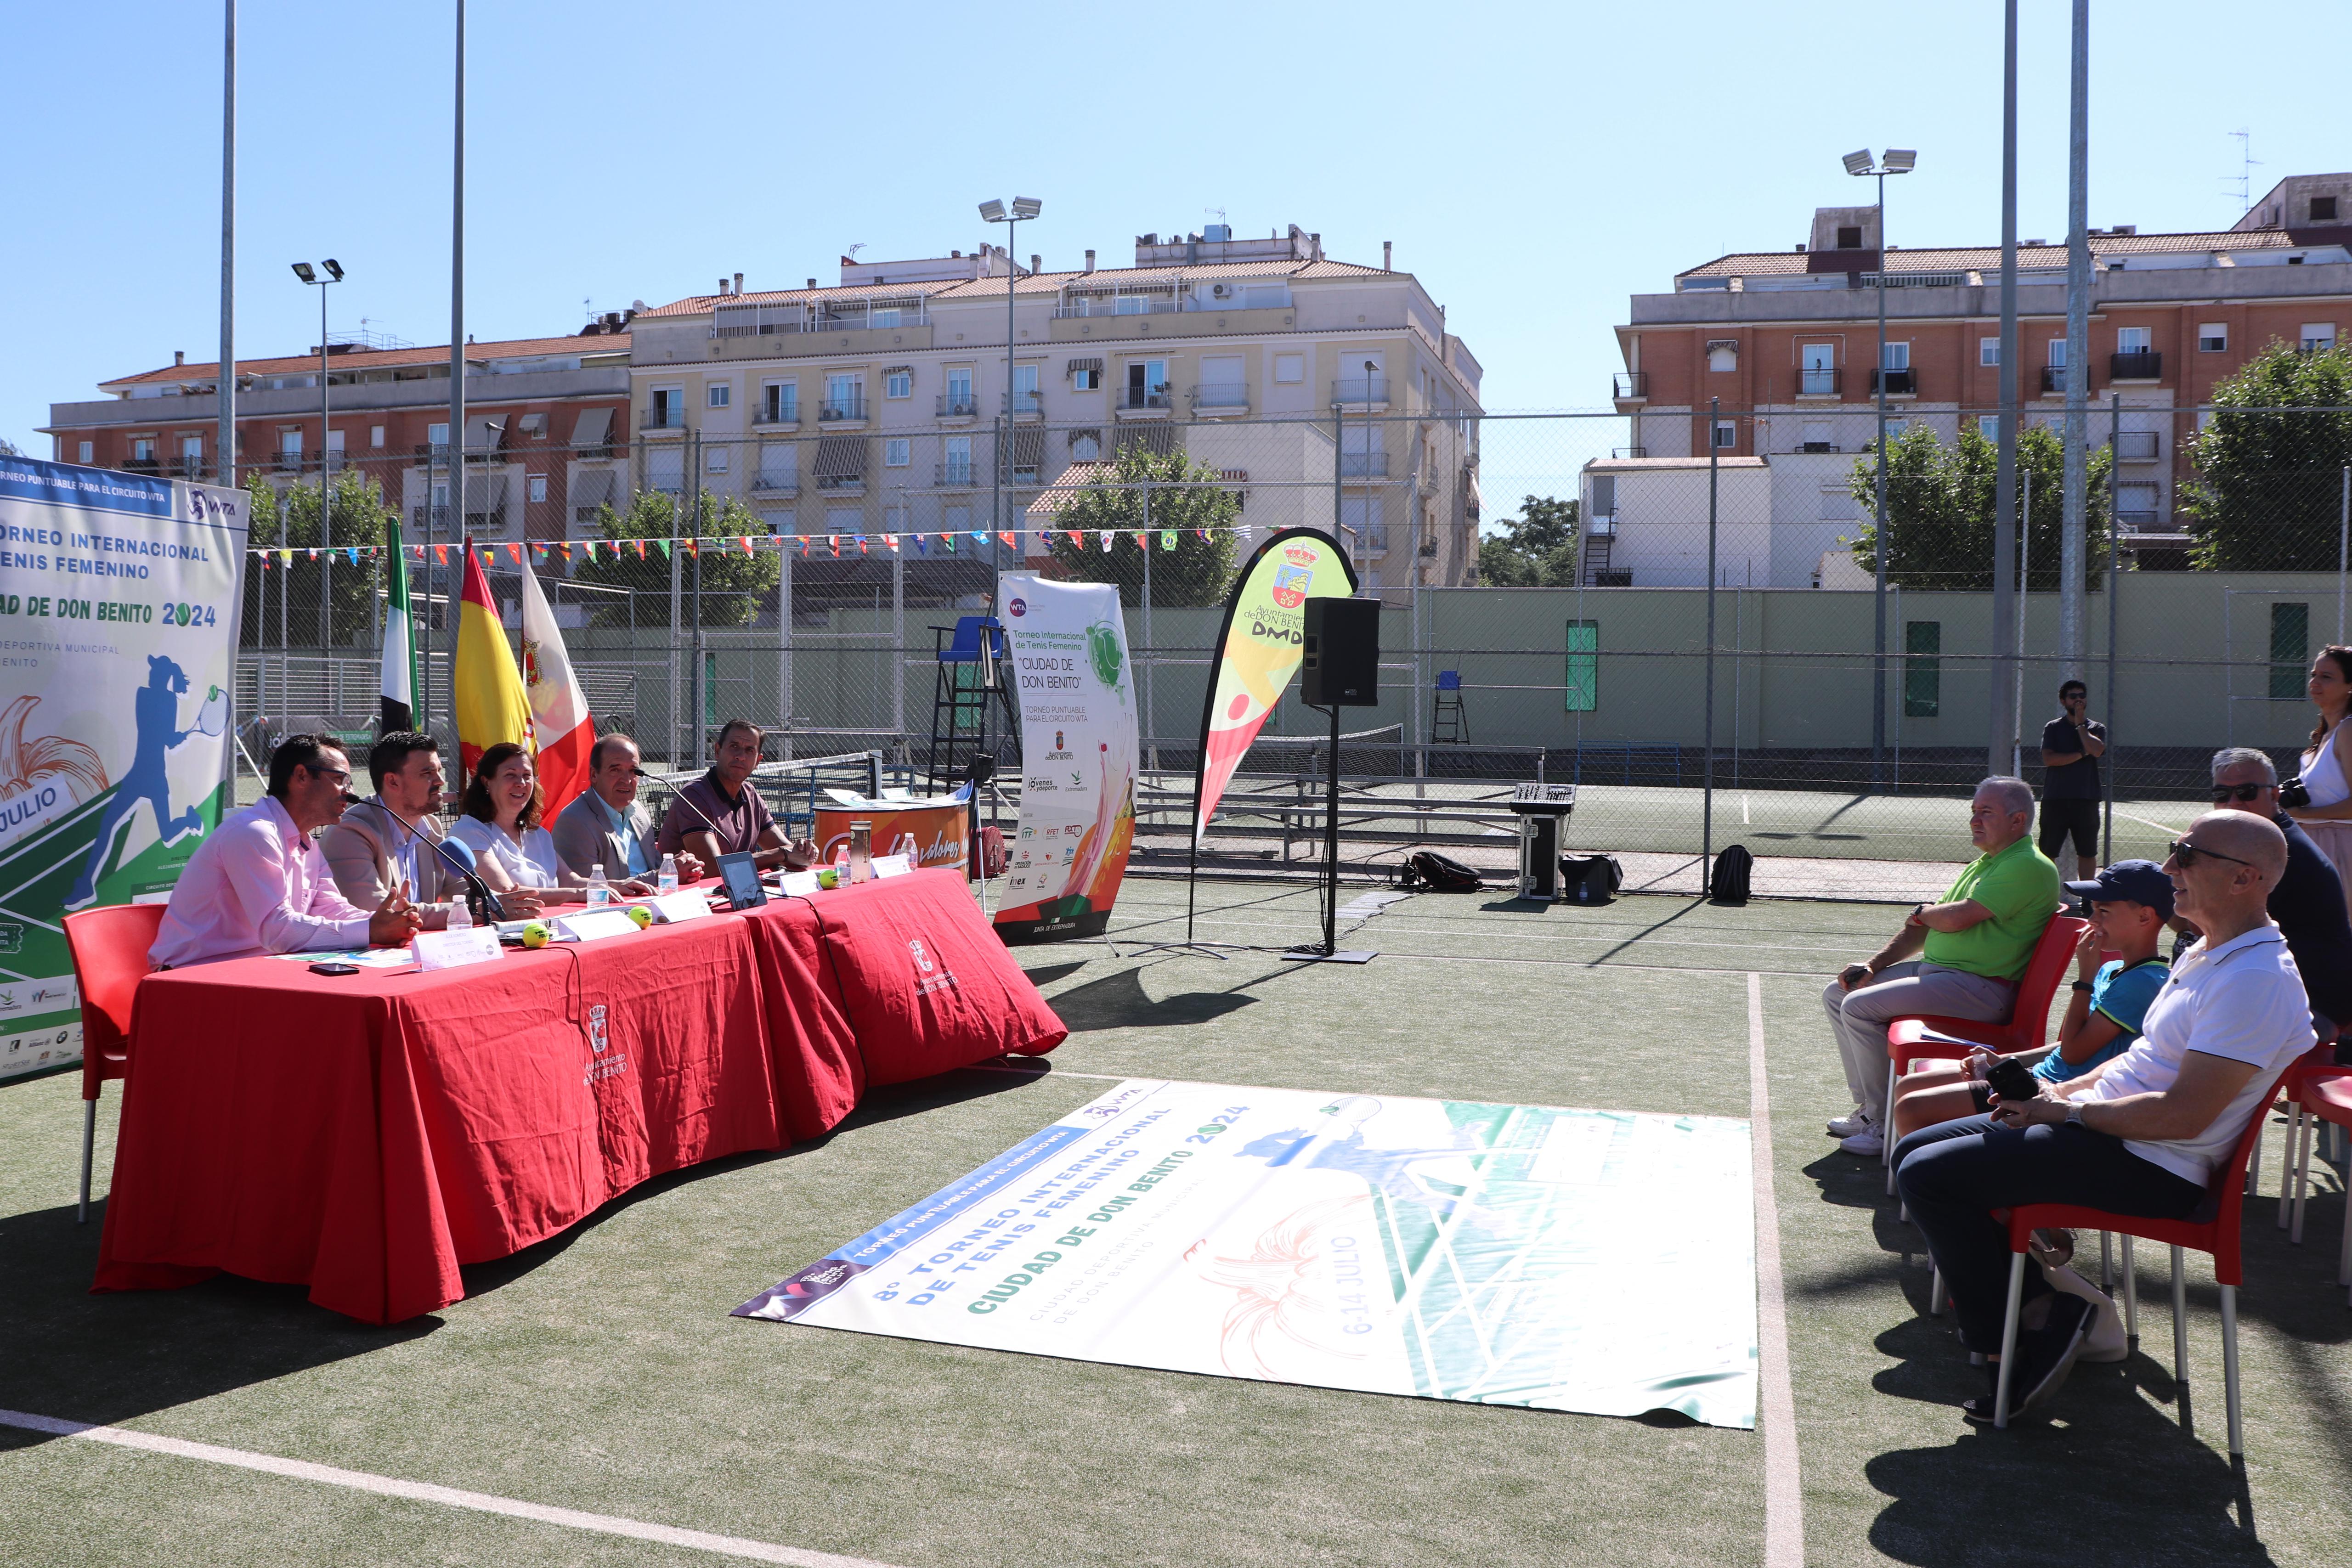 Image 10 of article La Junta de Extremadura apoya el VIII Torneo Internacional de Tenis Femenino que se celebrará en Don Benito del 6 al 14 de julio